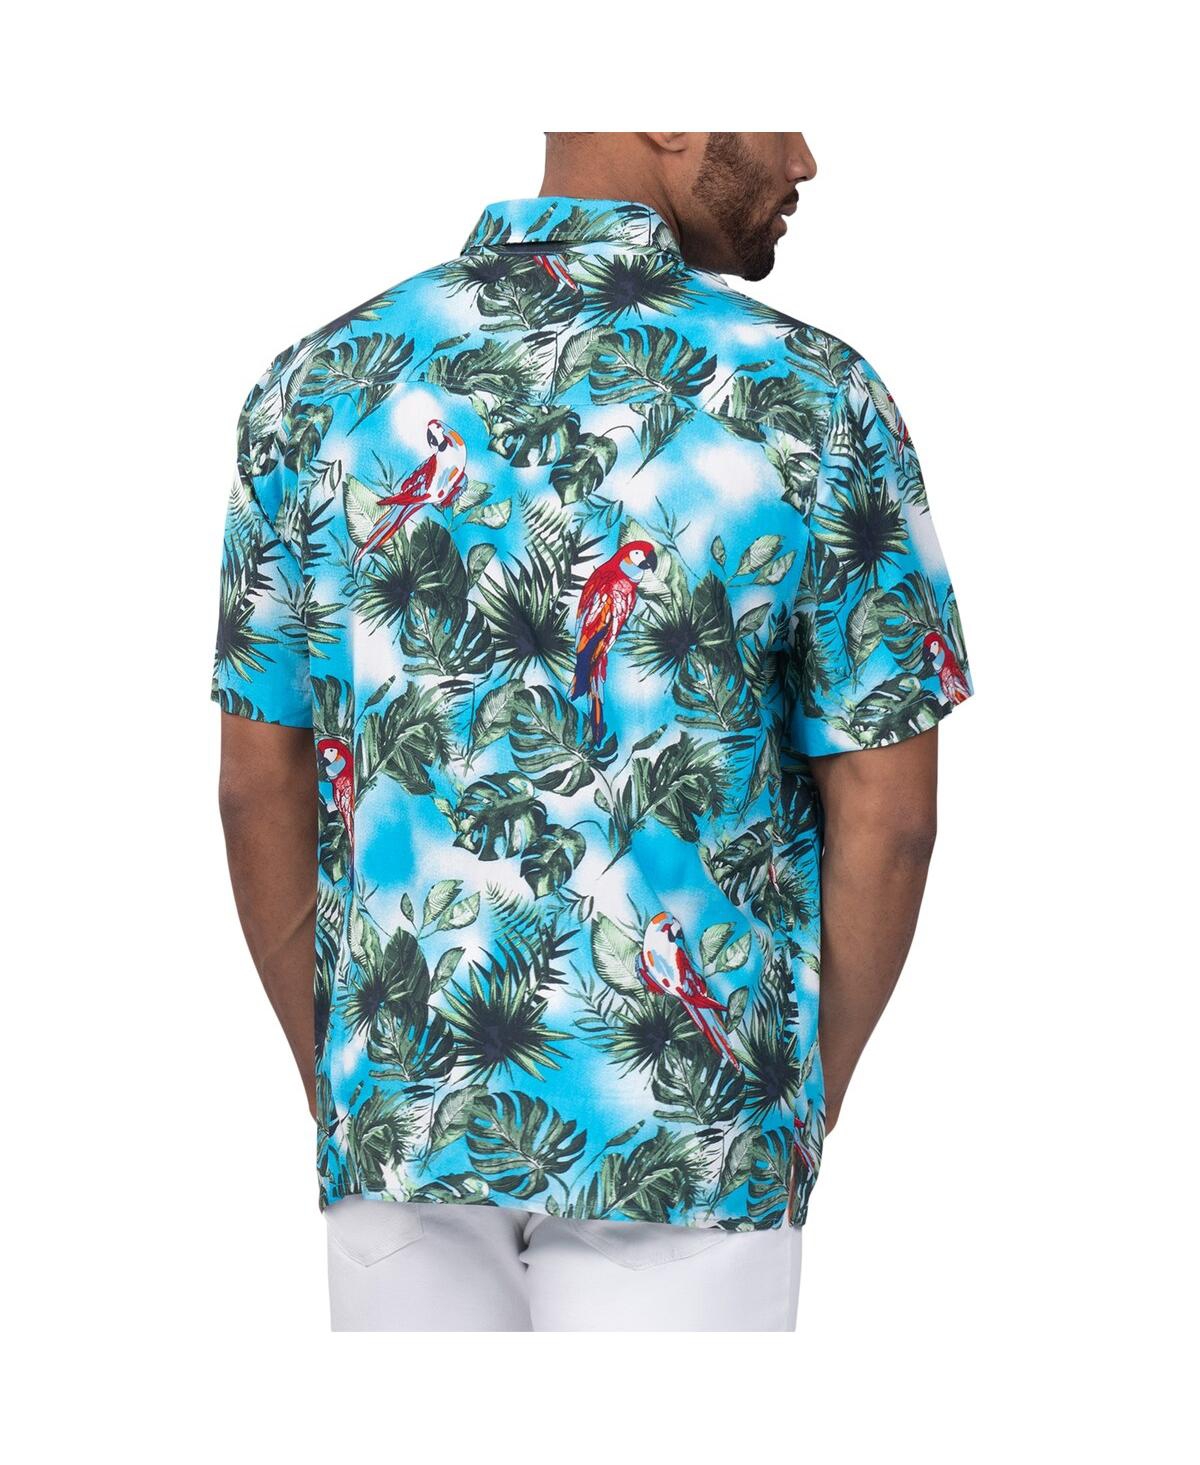 Shop Margaritaville Men's  Light Blue New England Patriots Jungle Parrot Party Button-up Shirt